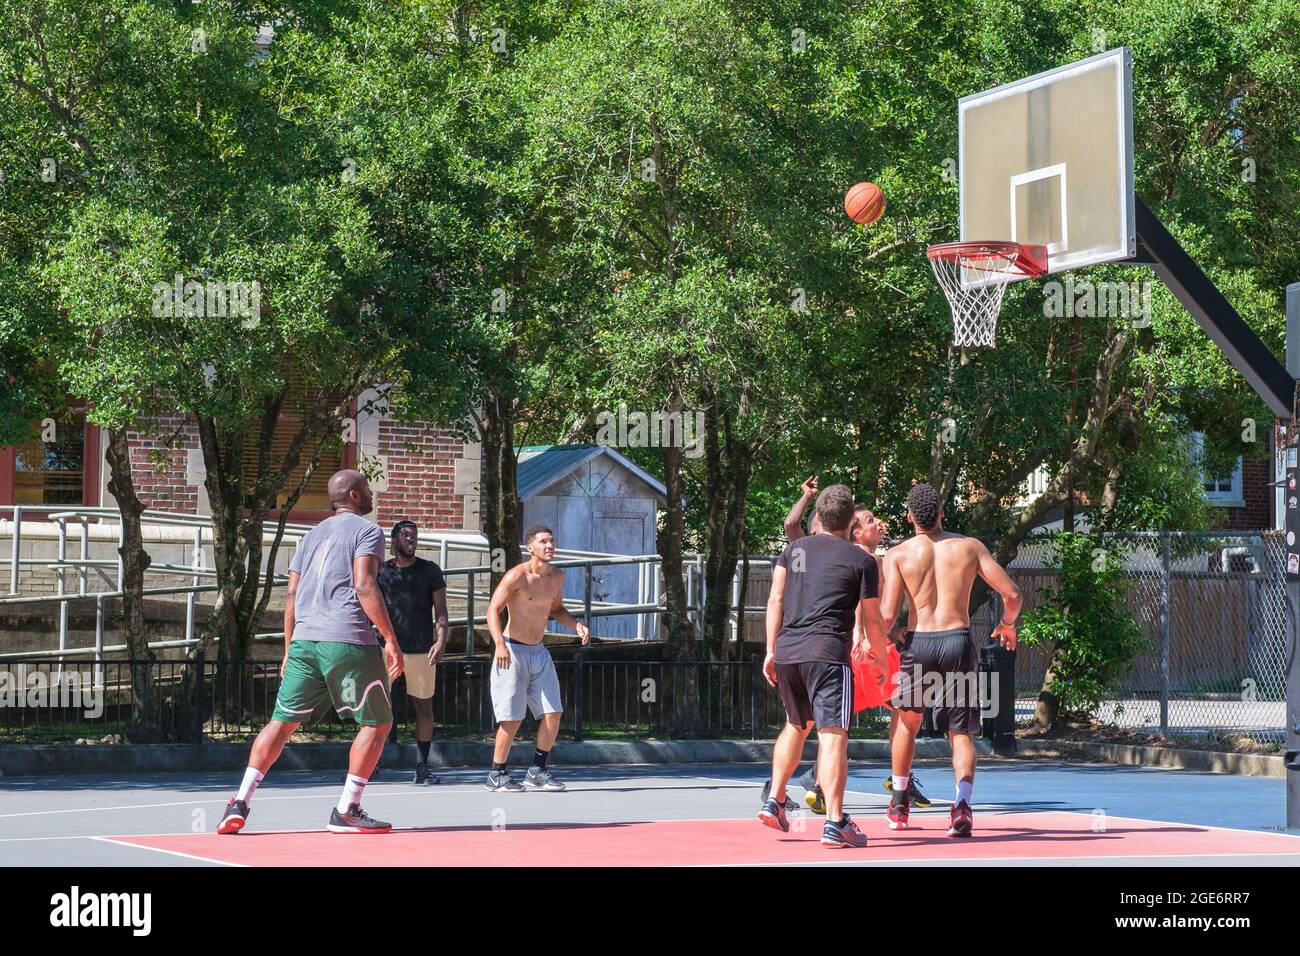 NEW ORLEANS, LA, USA - 14. AUGUST 2021: Junge Männer spielen im Freien Pickup-Basketball Stockfoto